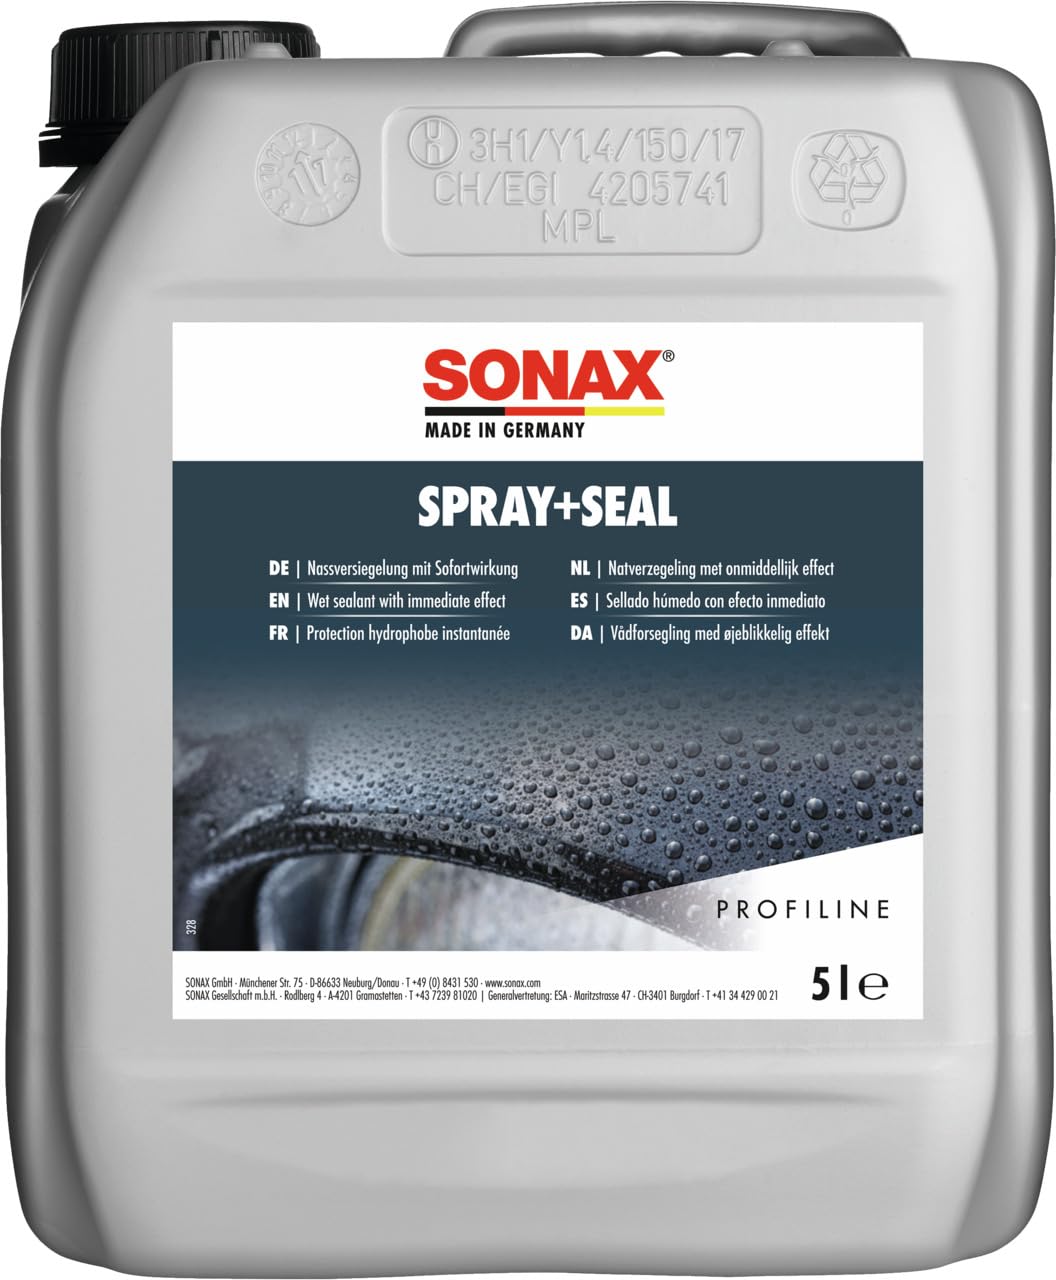 SONAX PROFILINE Spray+Seal (5 Liter) gebrauchsfertige Nassversiegelung mit sofortigem wasser- & schmutzabweisenden Effekt | Art-Nr. 02435000